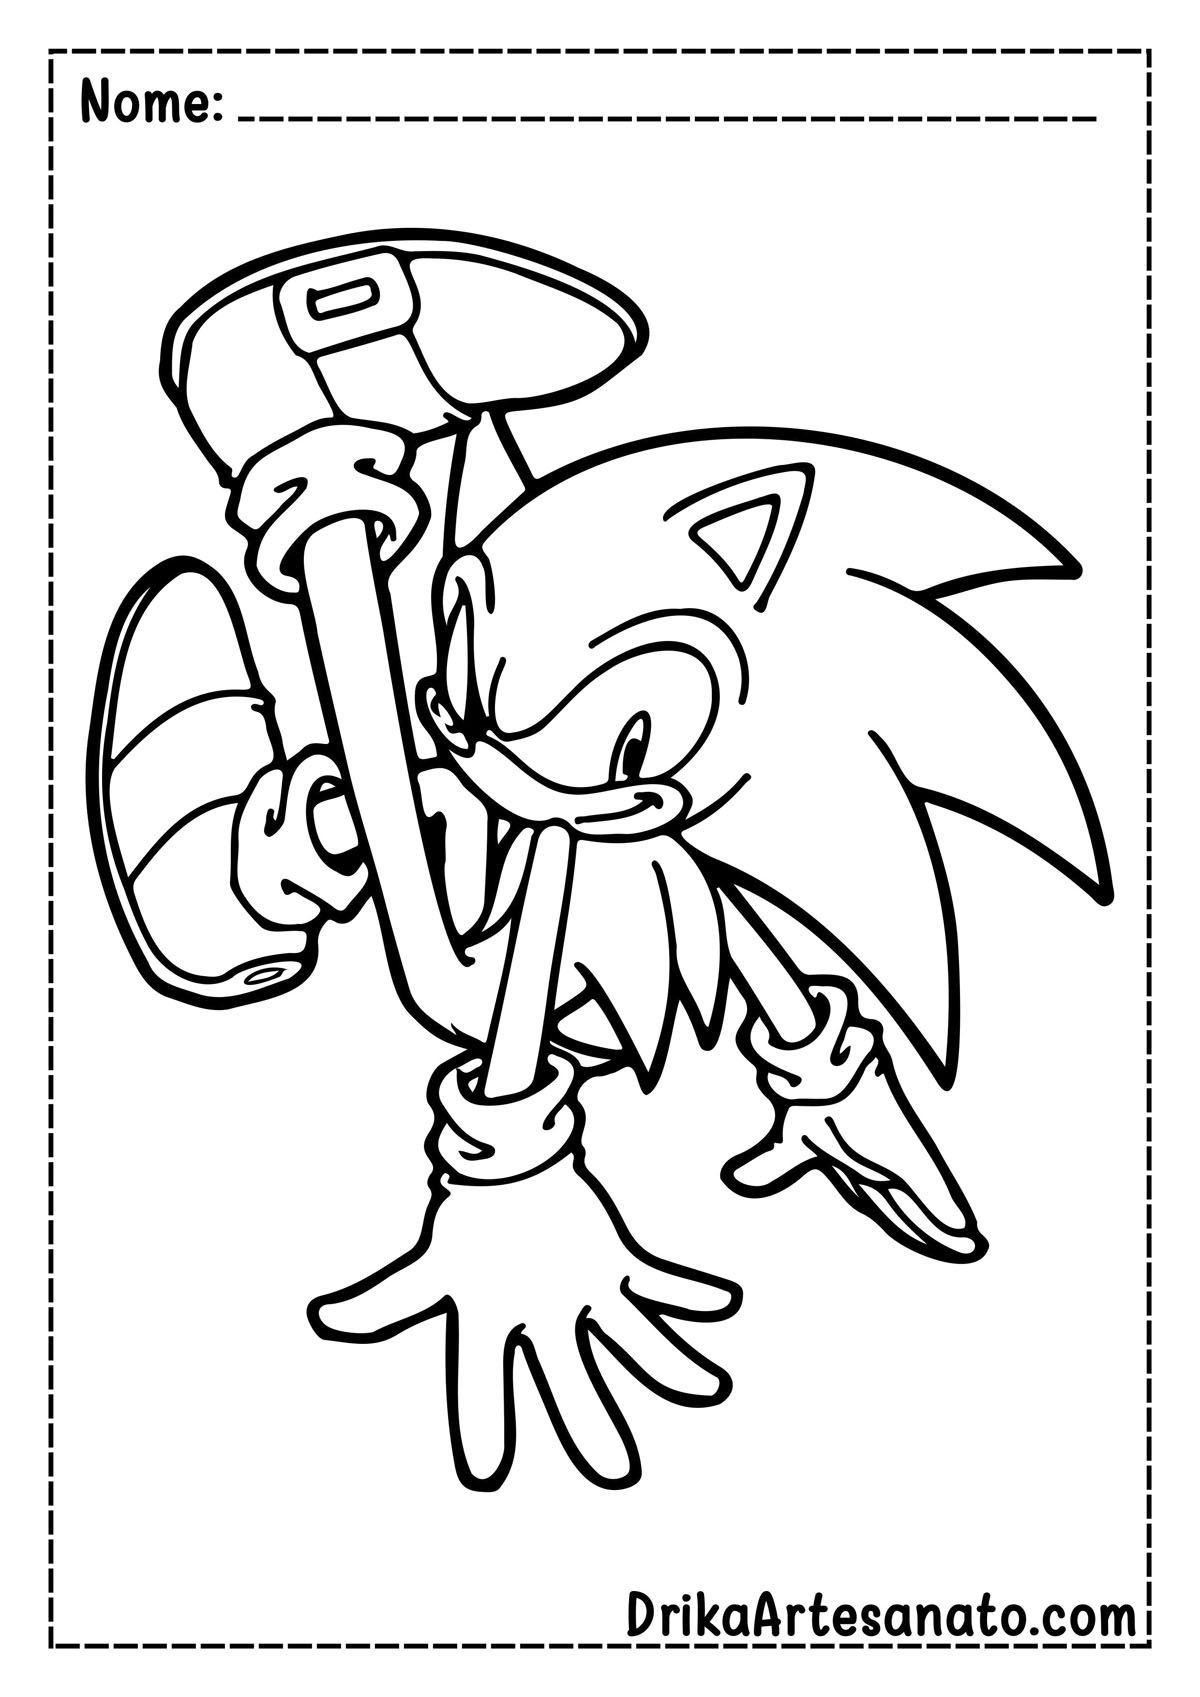 Desenho do Sonic para Colorir